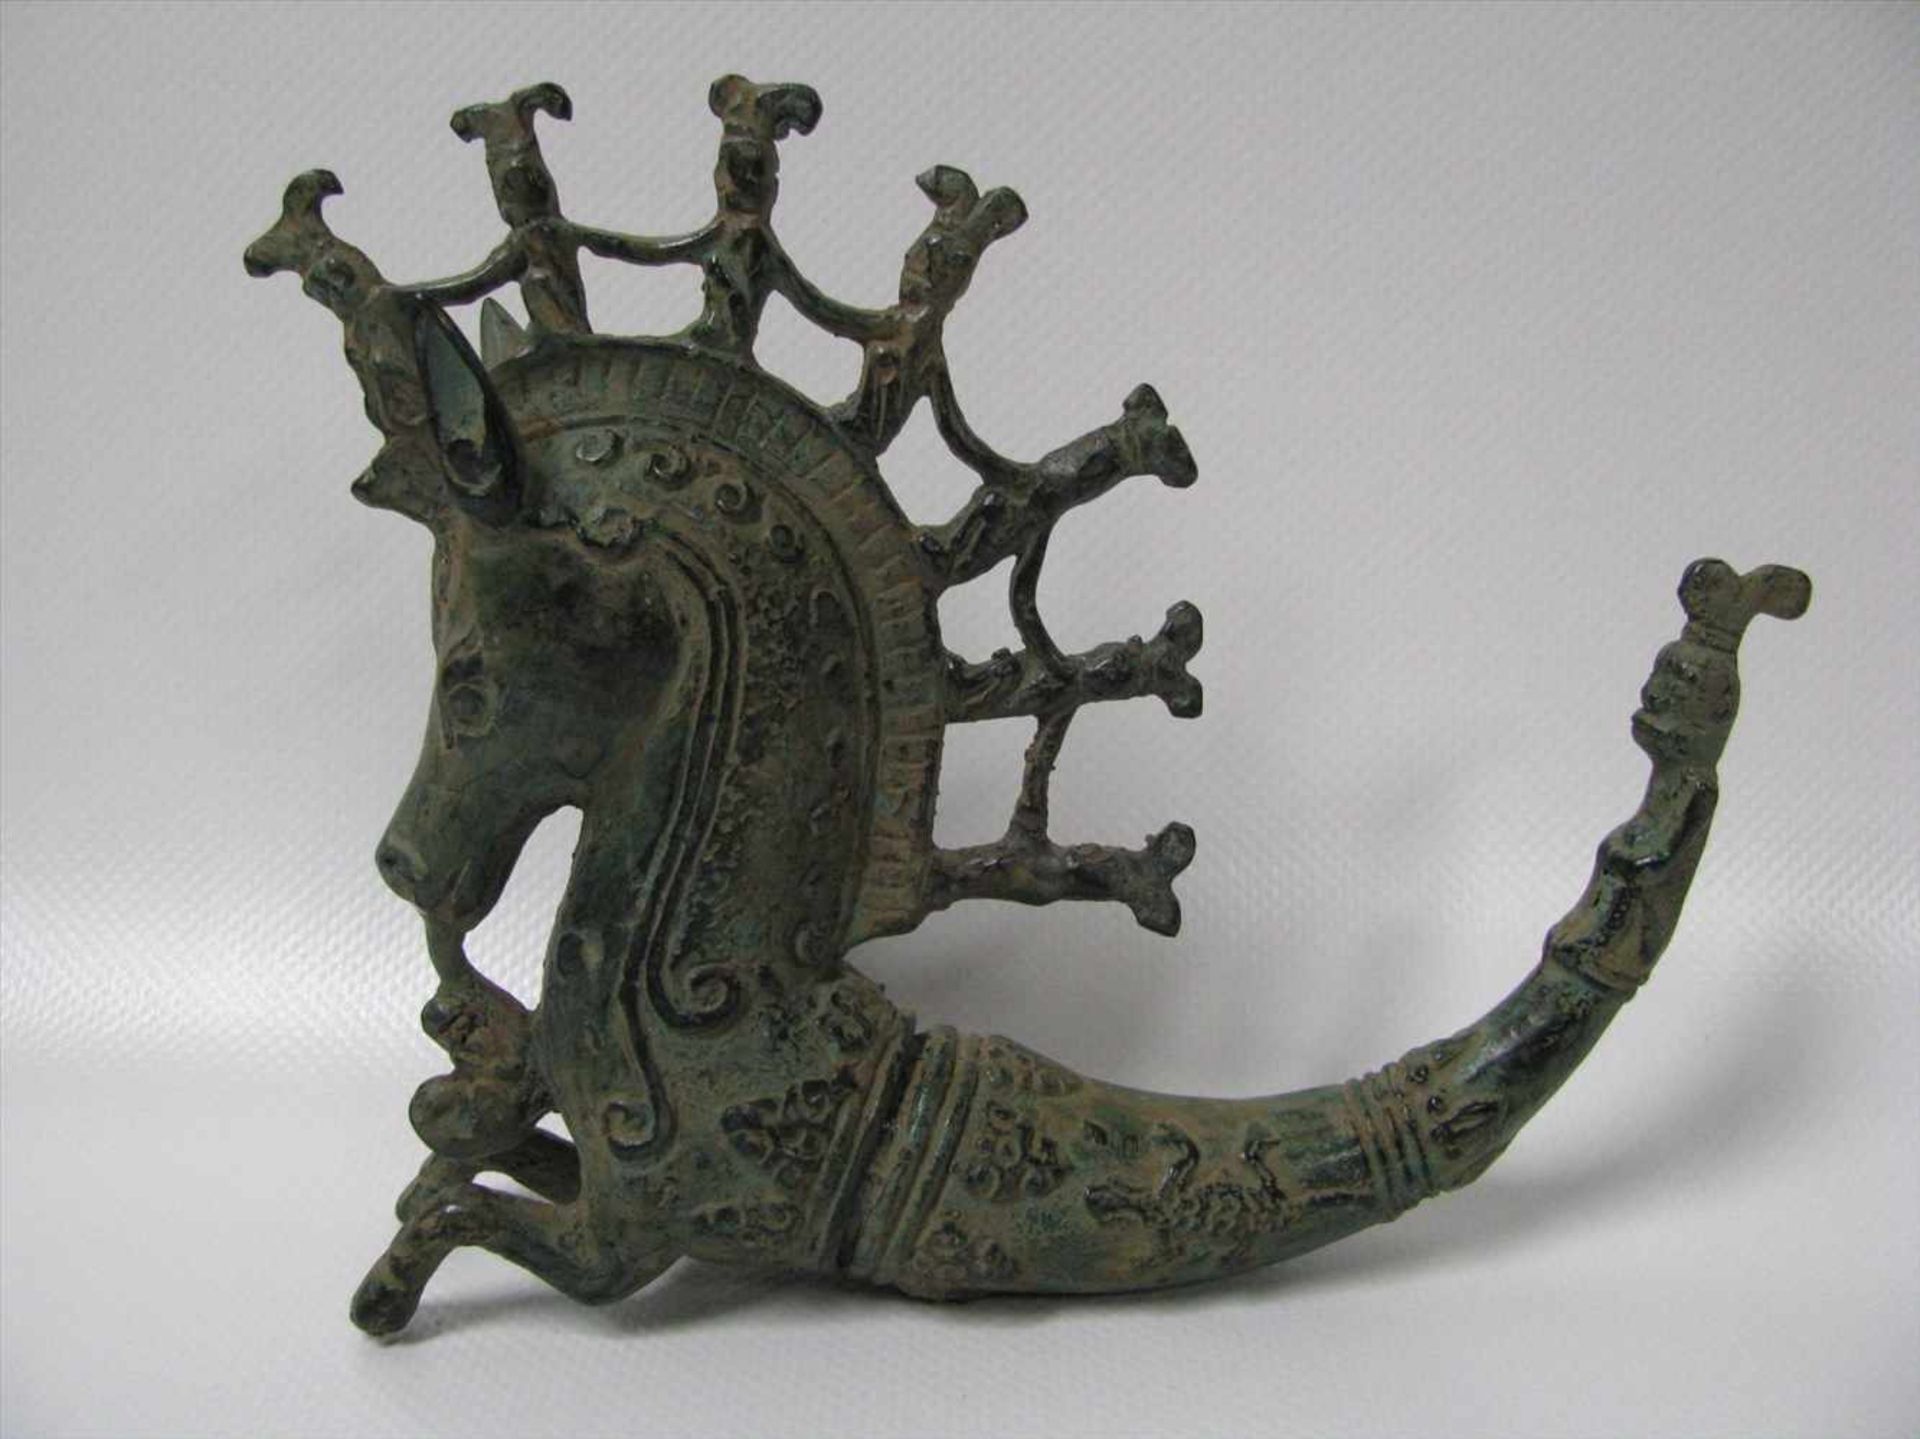 Gefäß in Form eines Pferds, Bronze patiniert, nach antikem Vorbild, 13 x 16 x 3,5 cm.